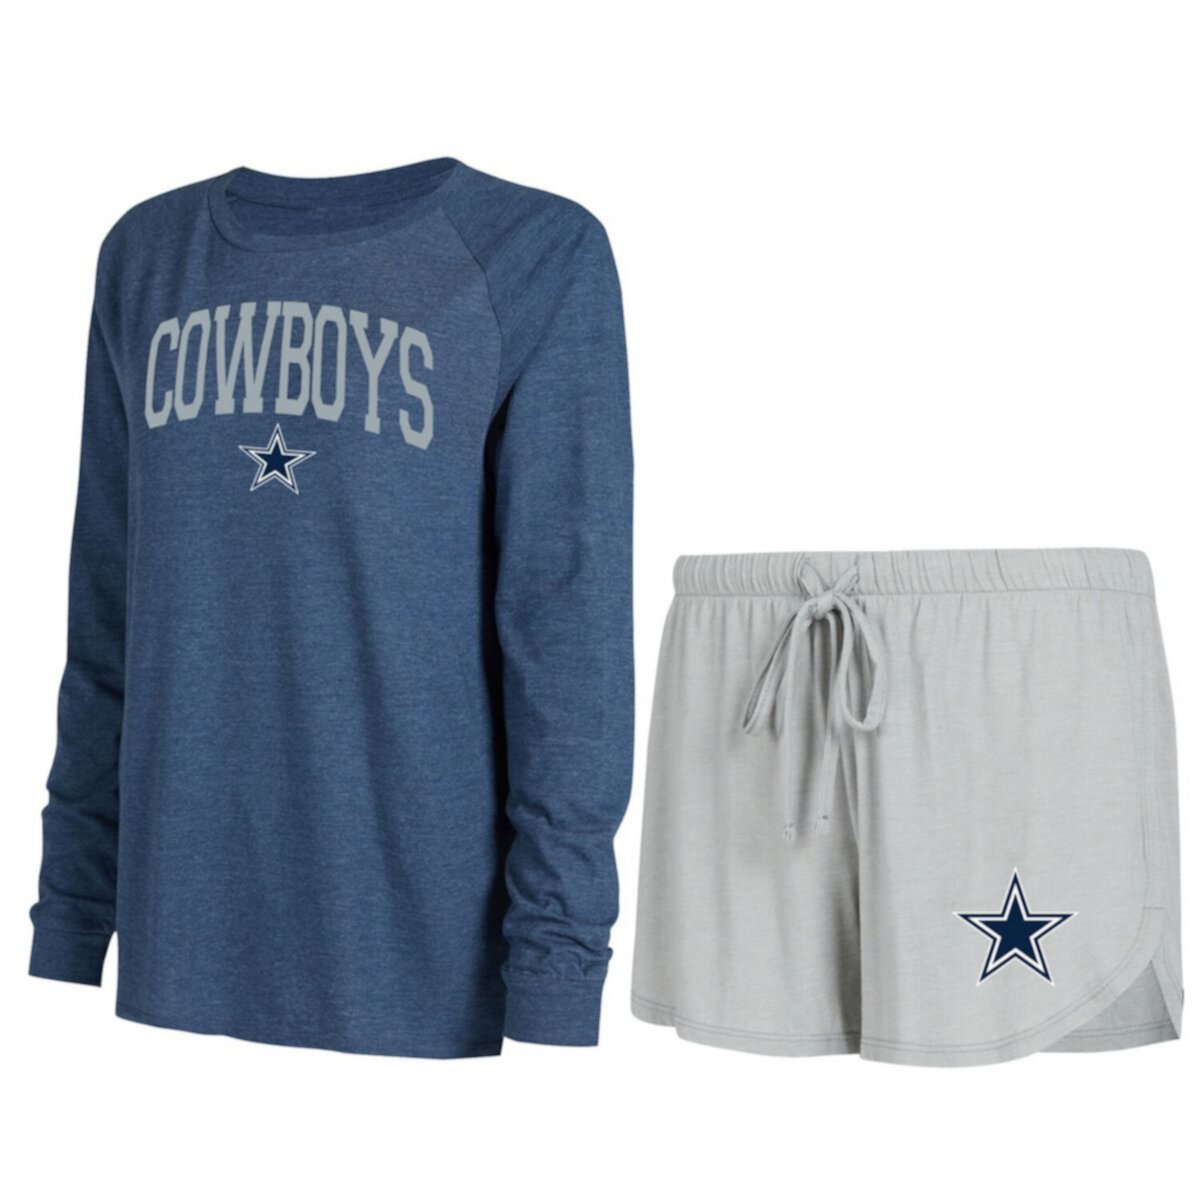 Женский спортивный серый/темно-синий комплект из футболки и шорт с длинными рукавами реглан Dallas Cowboys для отдыха Unbranded